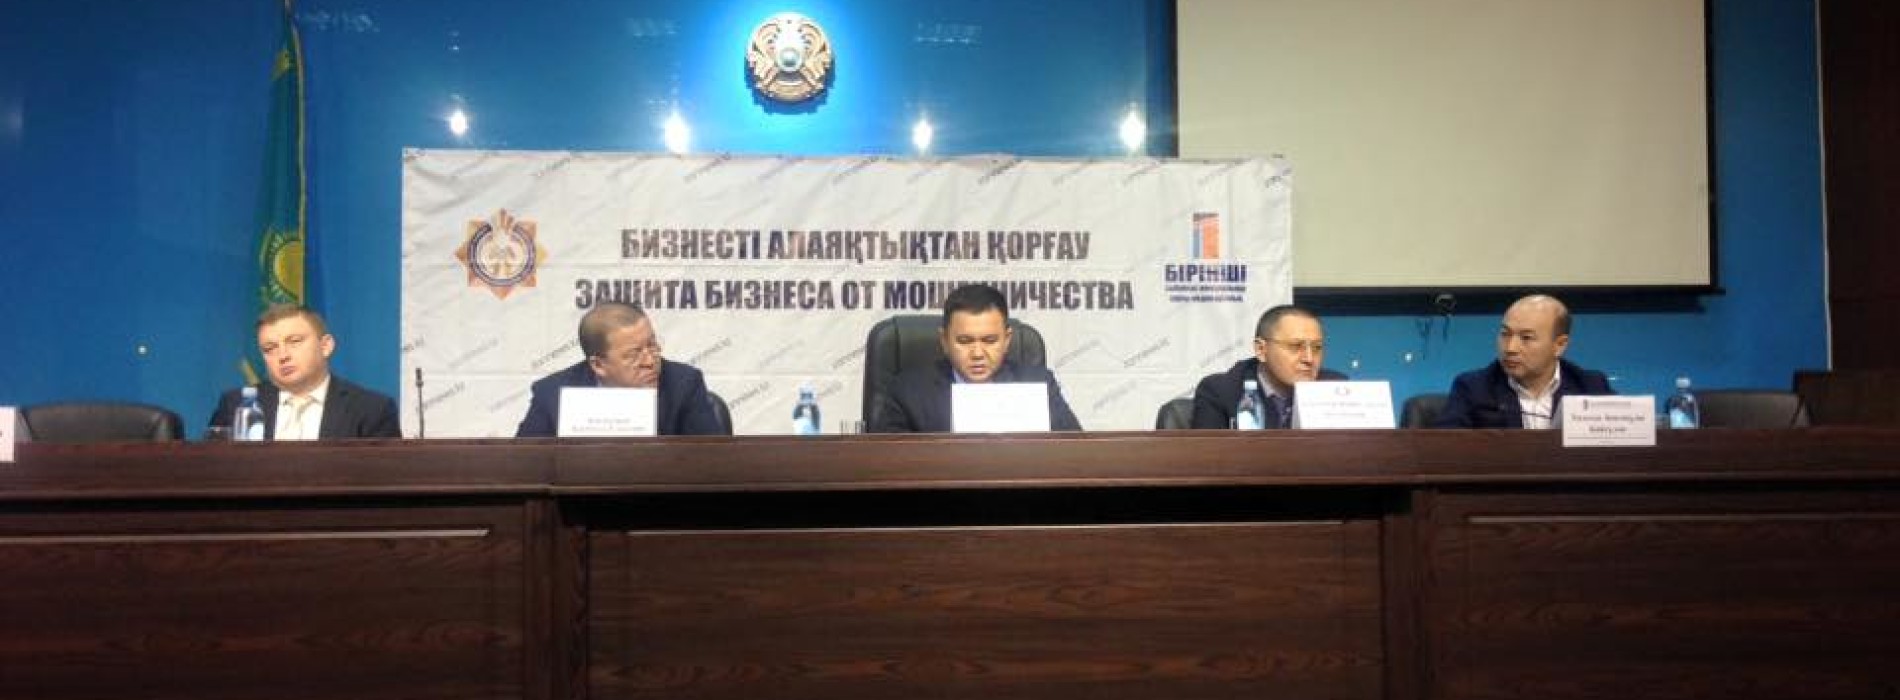 Как бороться с лжепредпринимательством в Казахстане